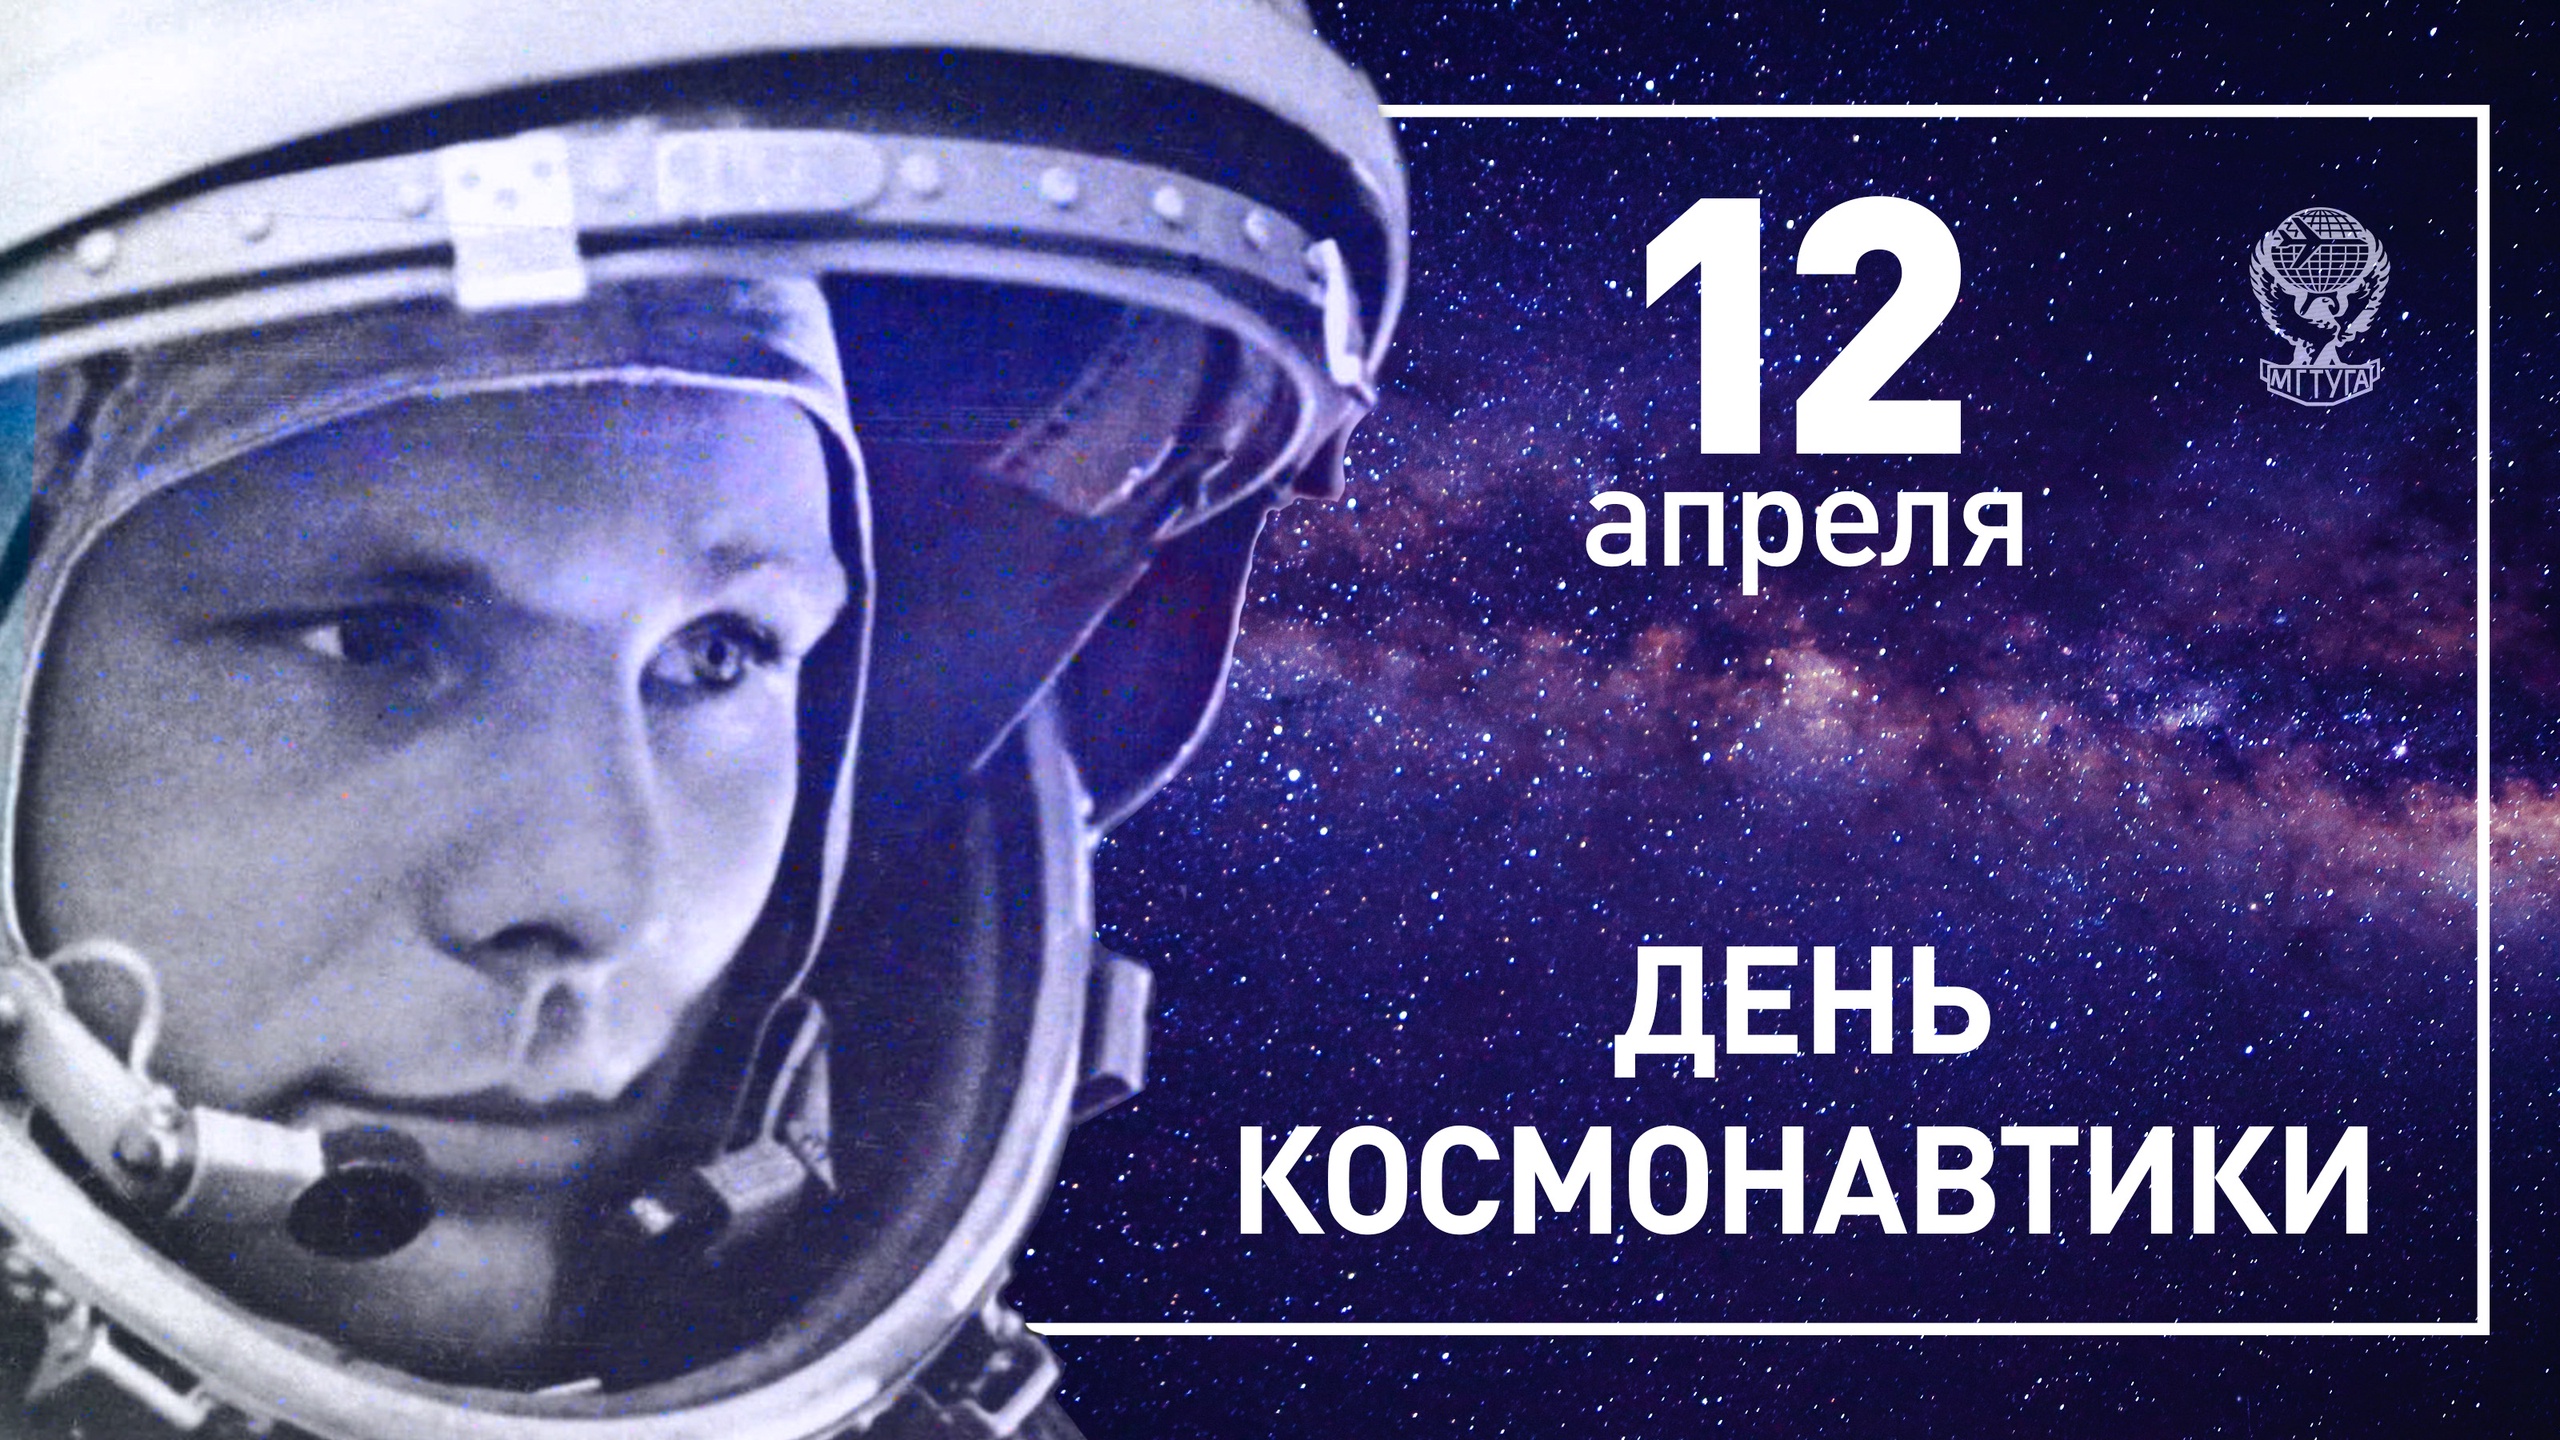 2 апреля день космонавтики. С днем космонавтики поздравление. Всемирный день авиации и космонавтики. С днем космонавтики открытки.